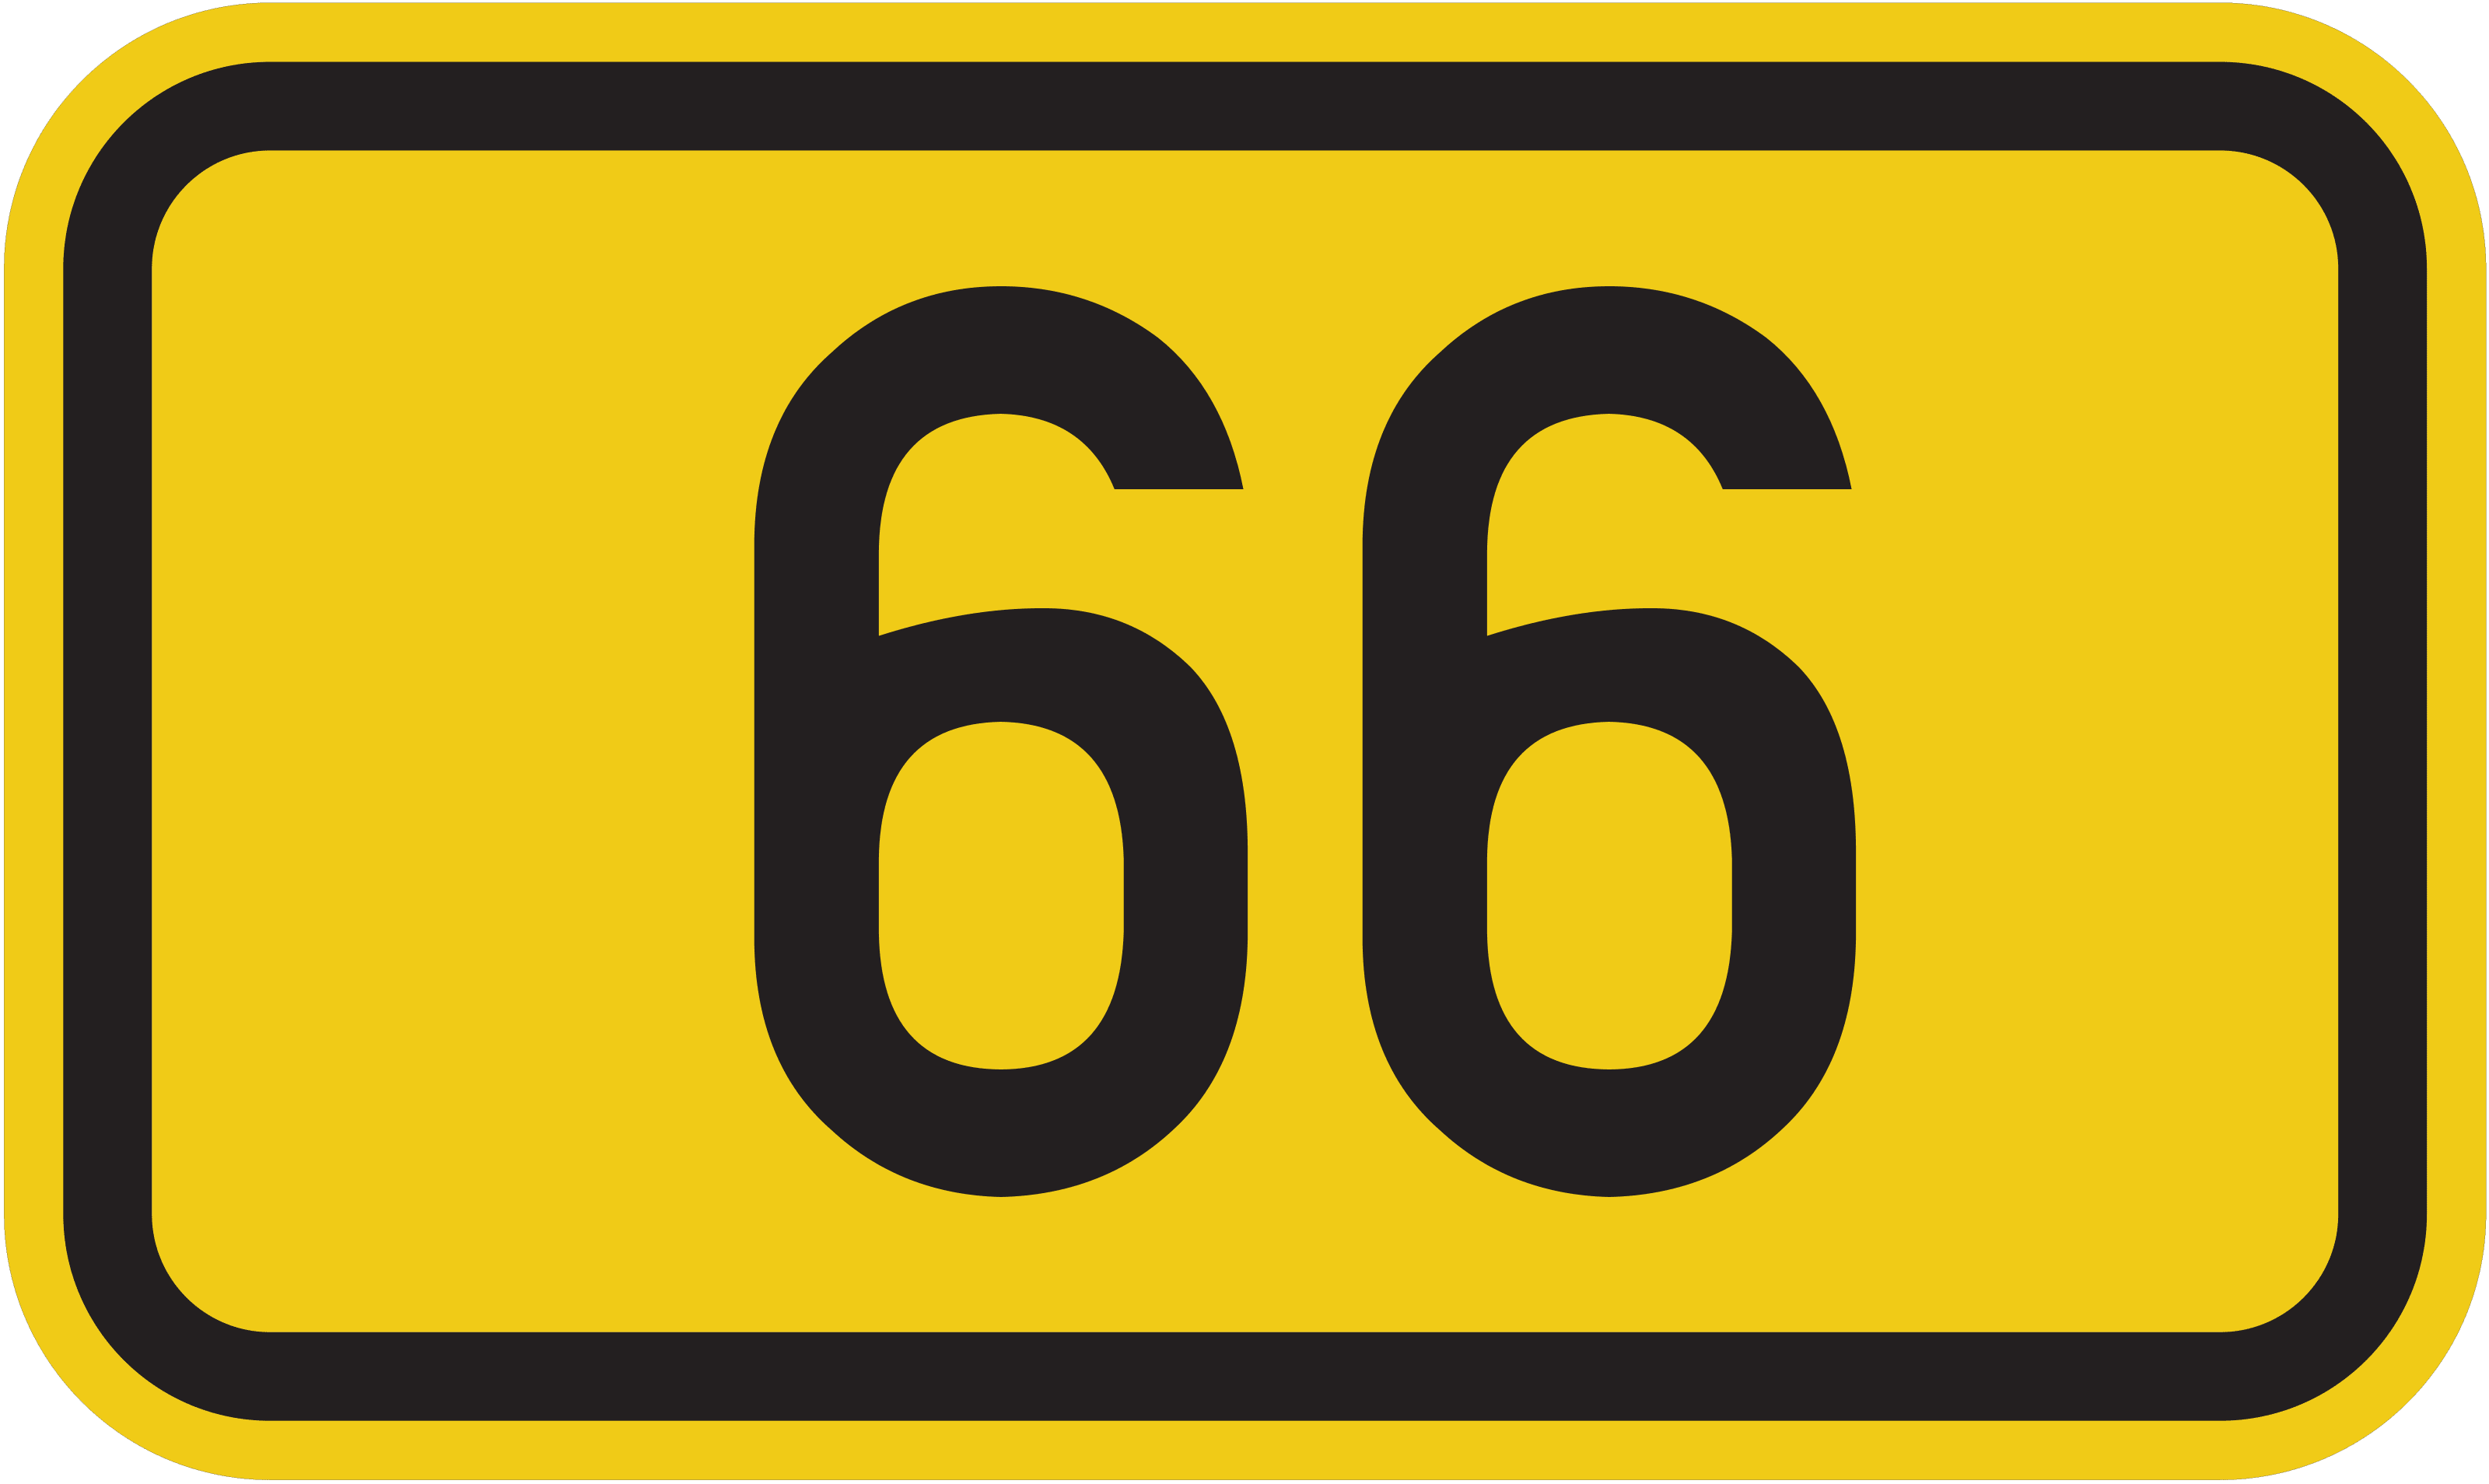 Bundesstraße B 66